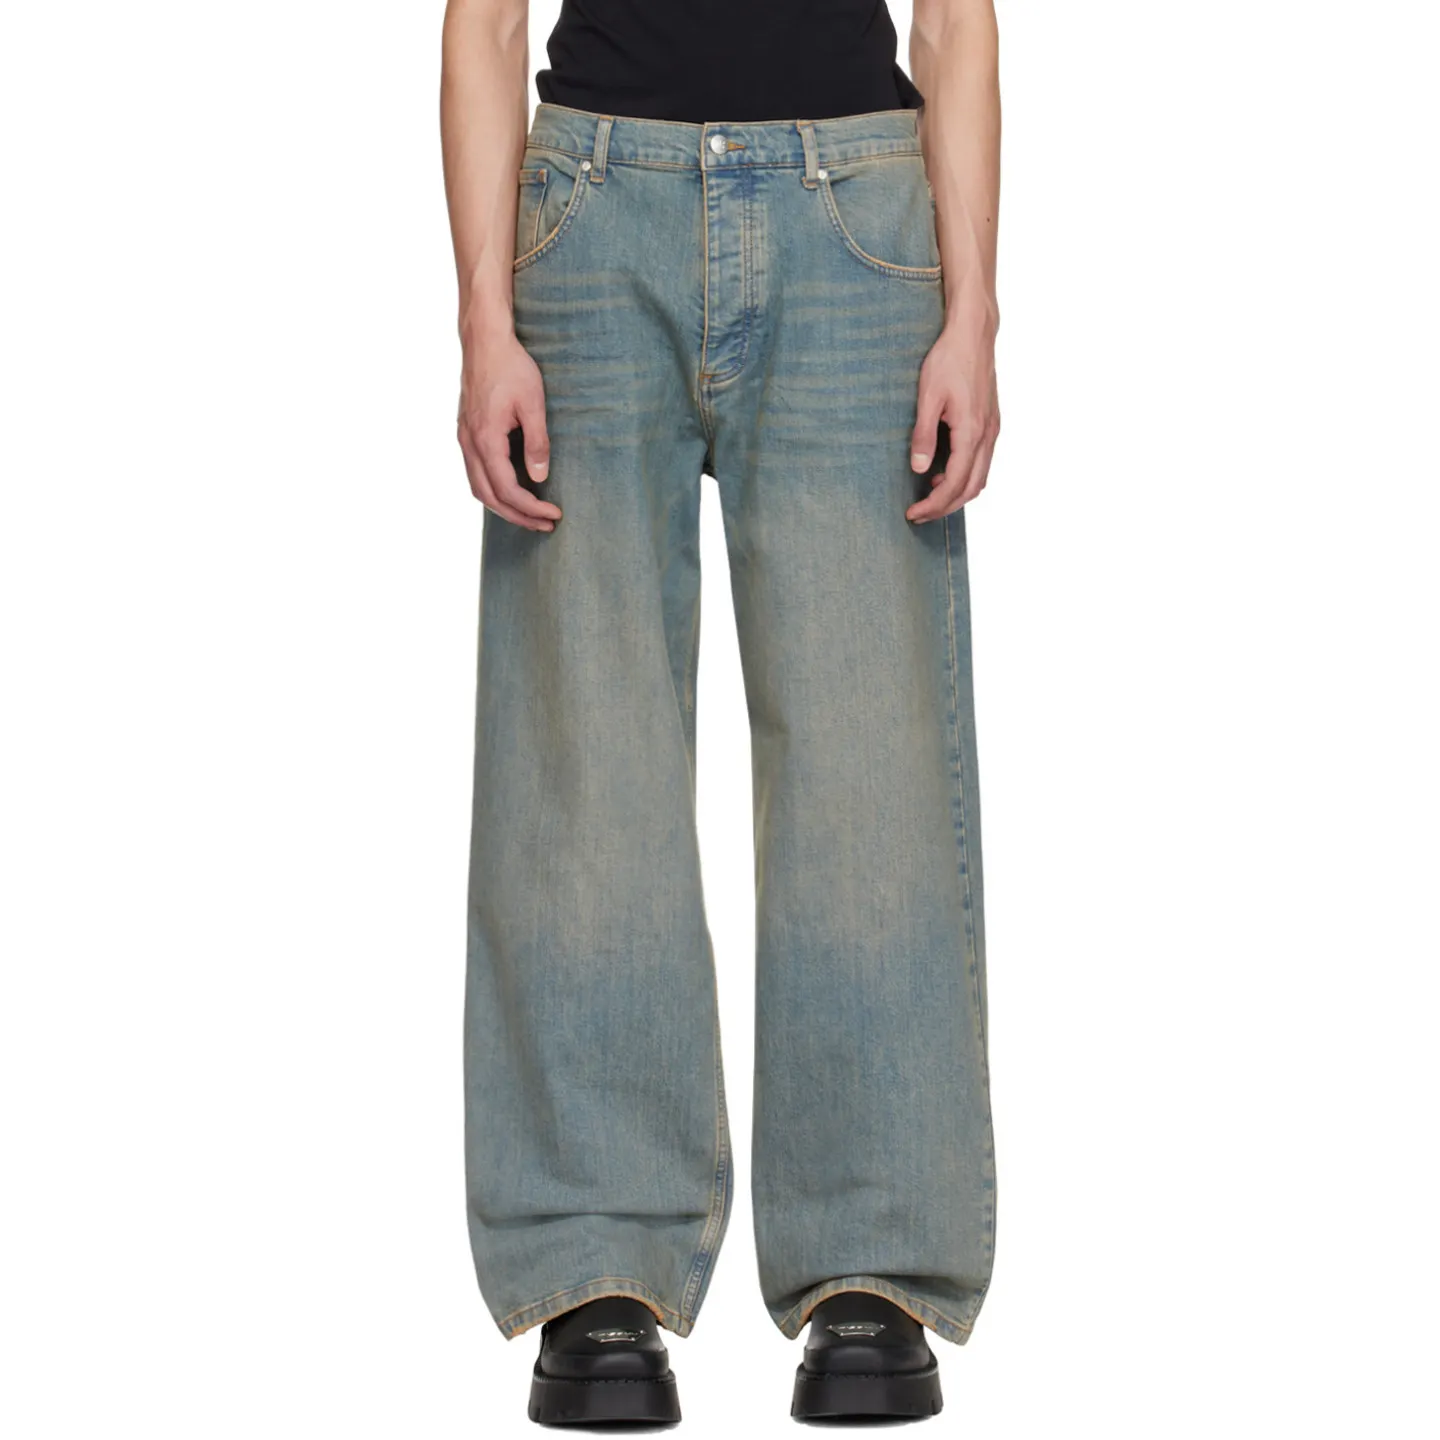 Jeans da uomo in Denim blu larghi lavati larghi e consumati stile Streetwear personalizzato Vintage